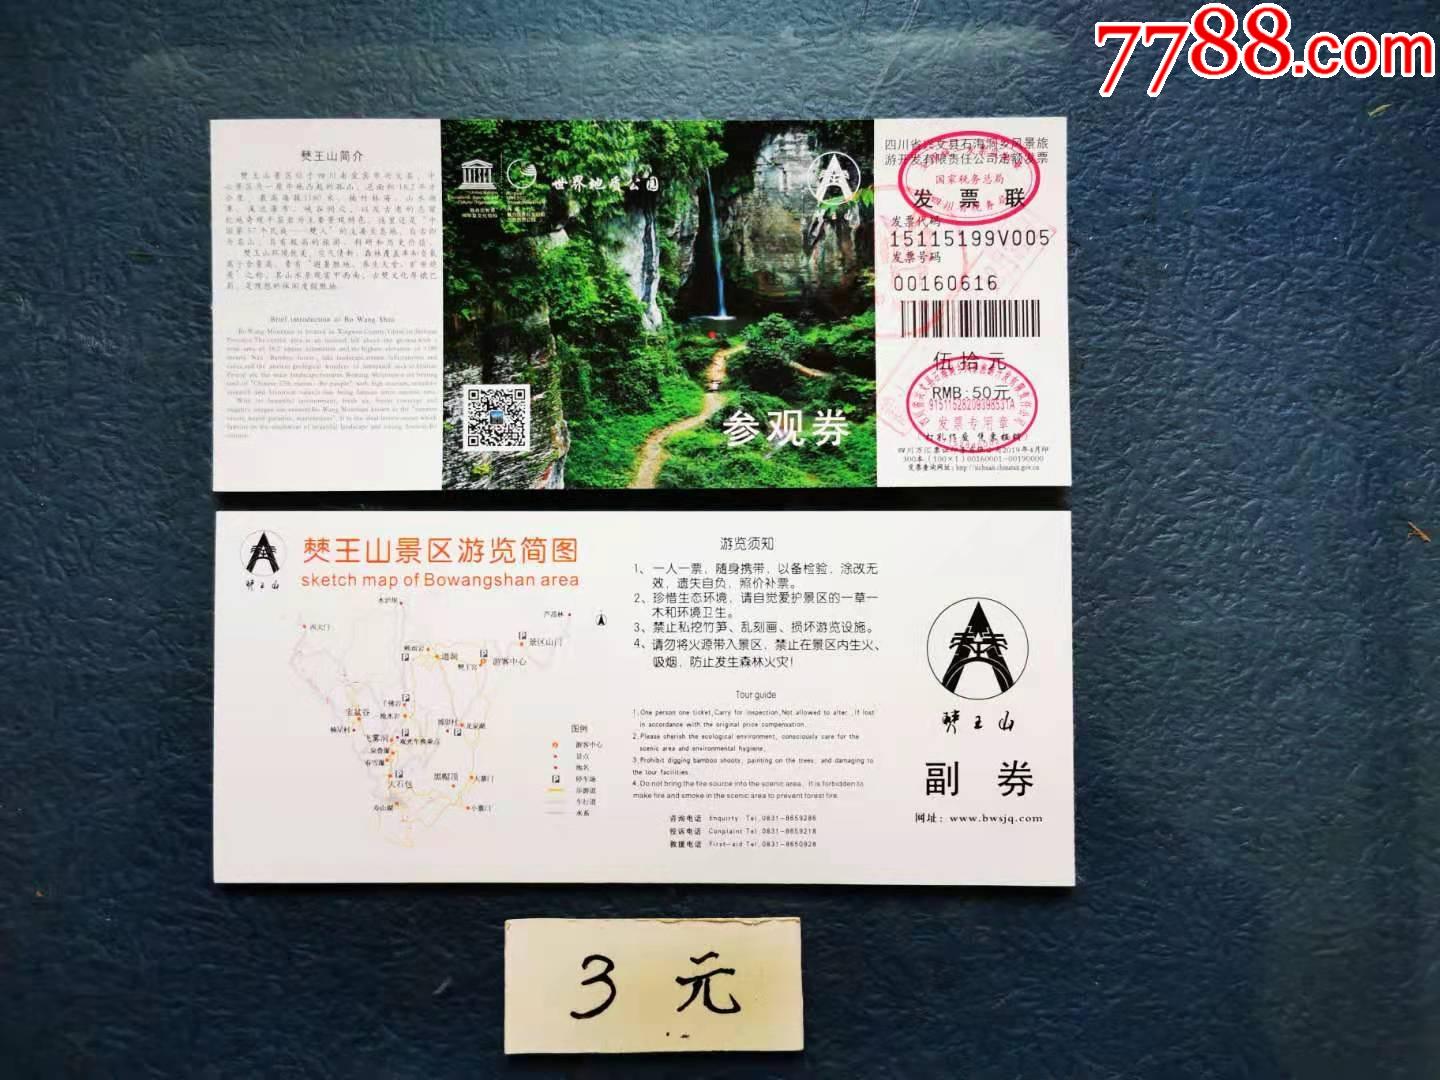 僰王山世界地质公园-价格:3元-se78894417-旅游景点门票-零售-7788